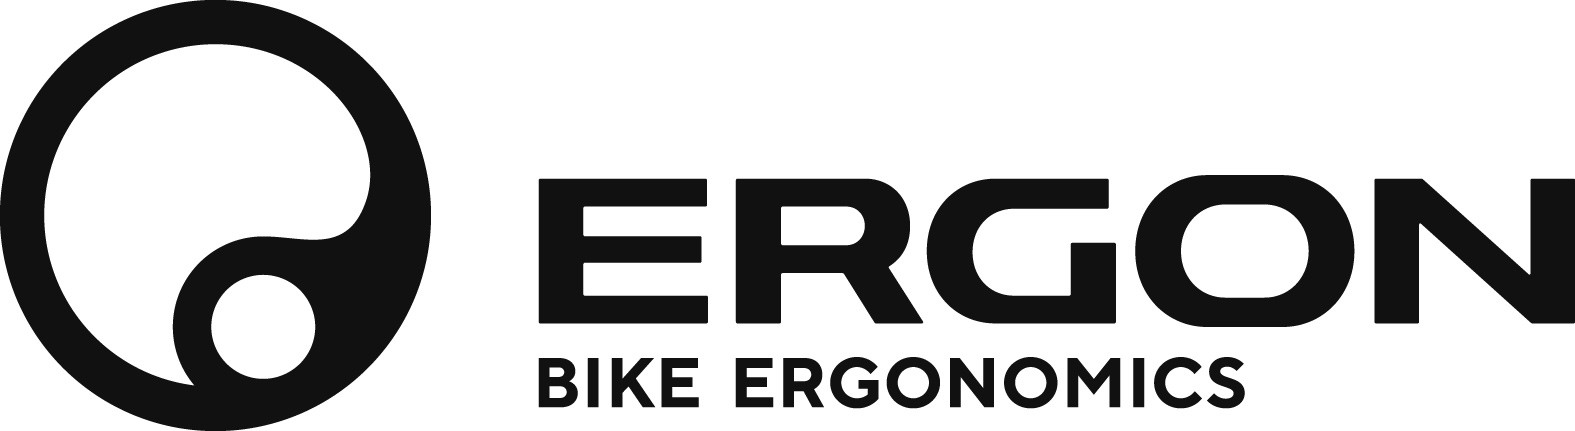 ERGON logo